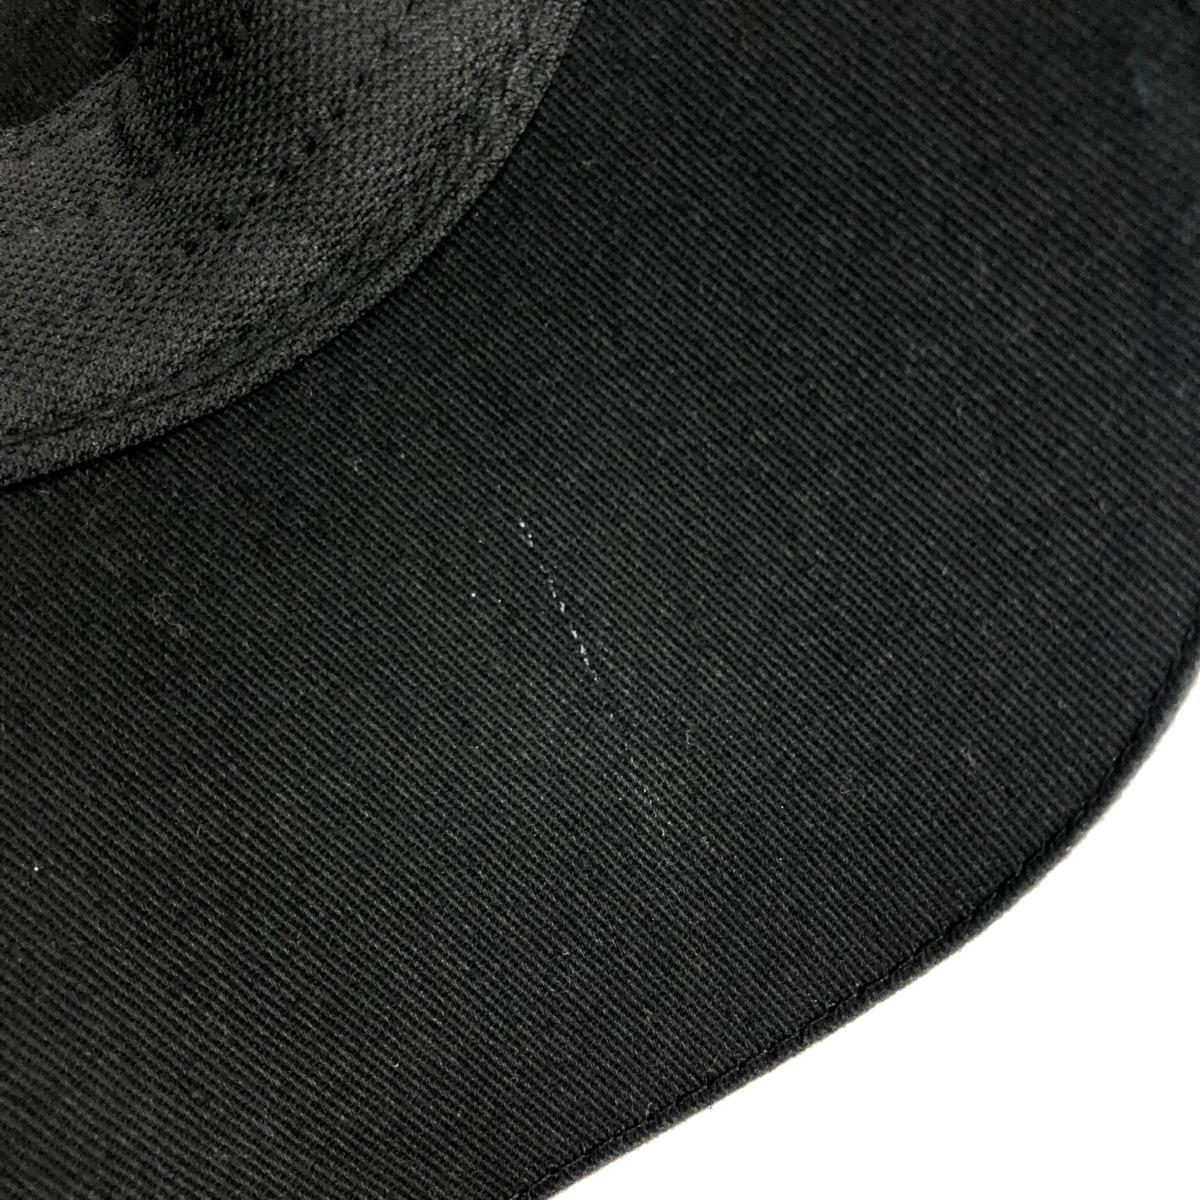  хороший *Callaway Callaway козырек * черный Logo .? мужской шляпа шляпа hat аксессуары 